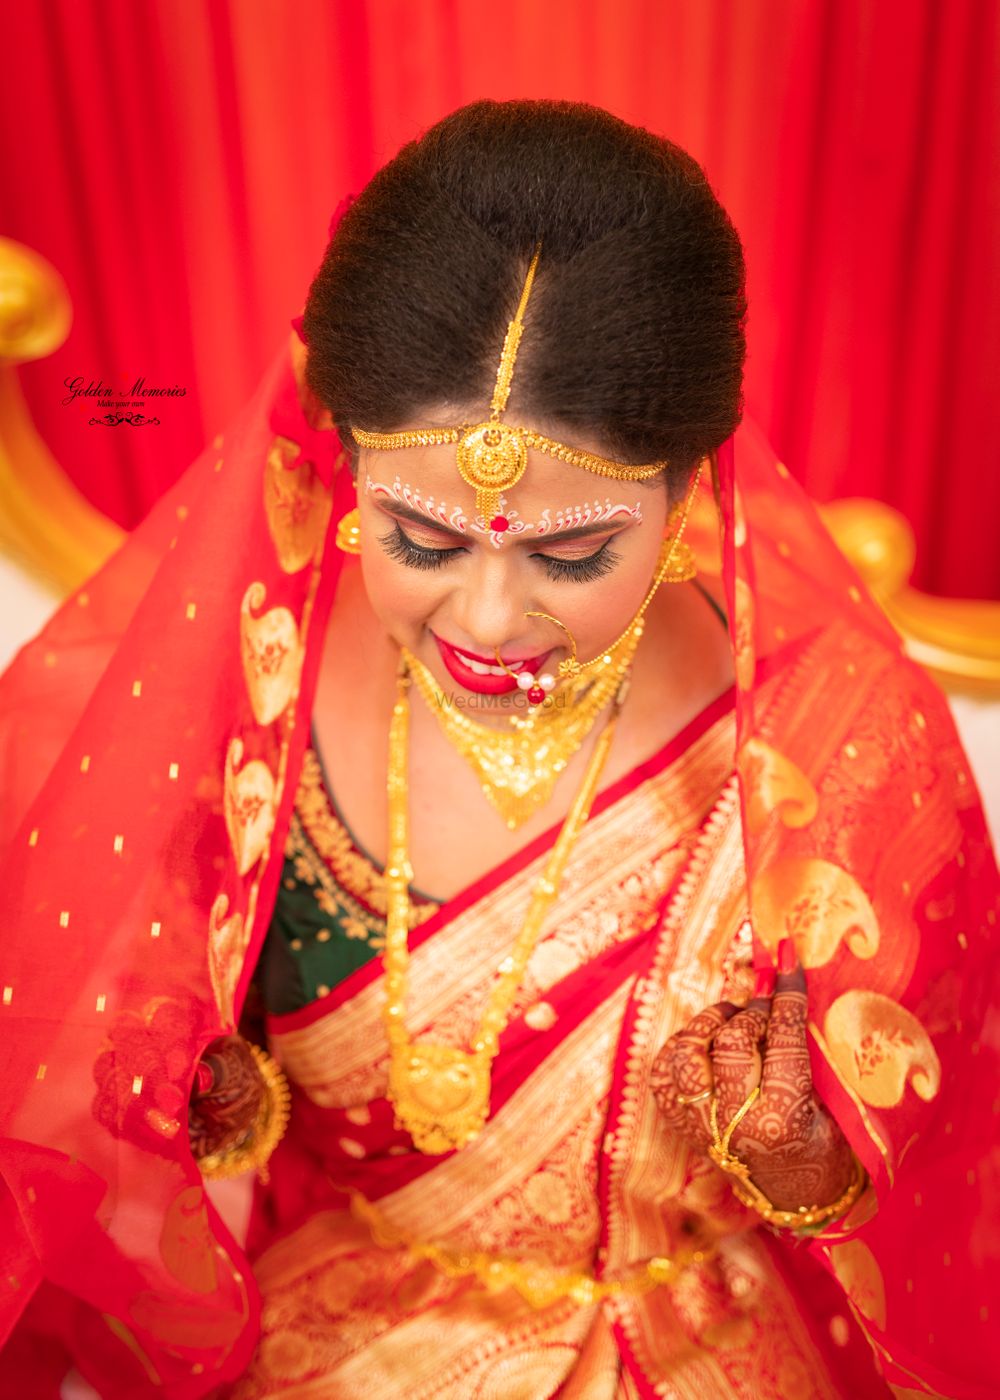 Photo From Anirban Krishna wedding scenes - By Golden Memories